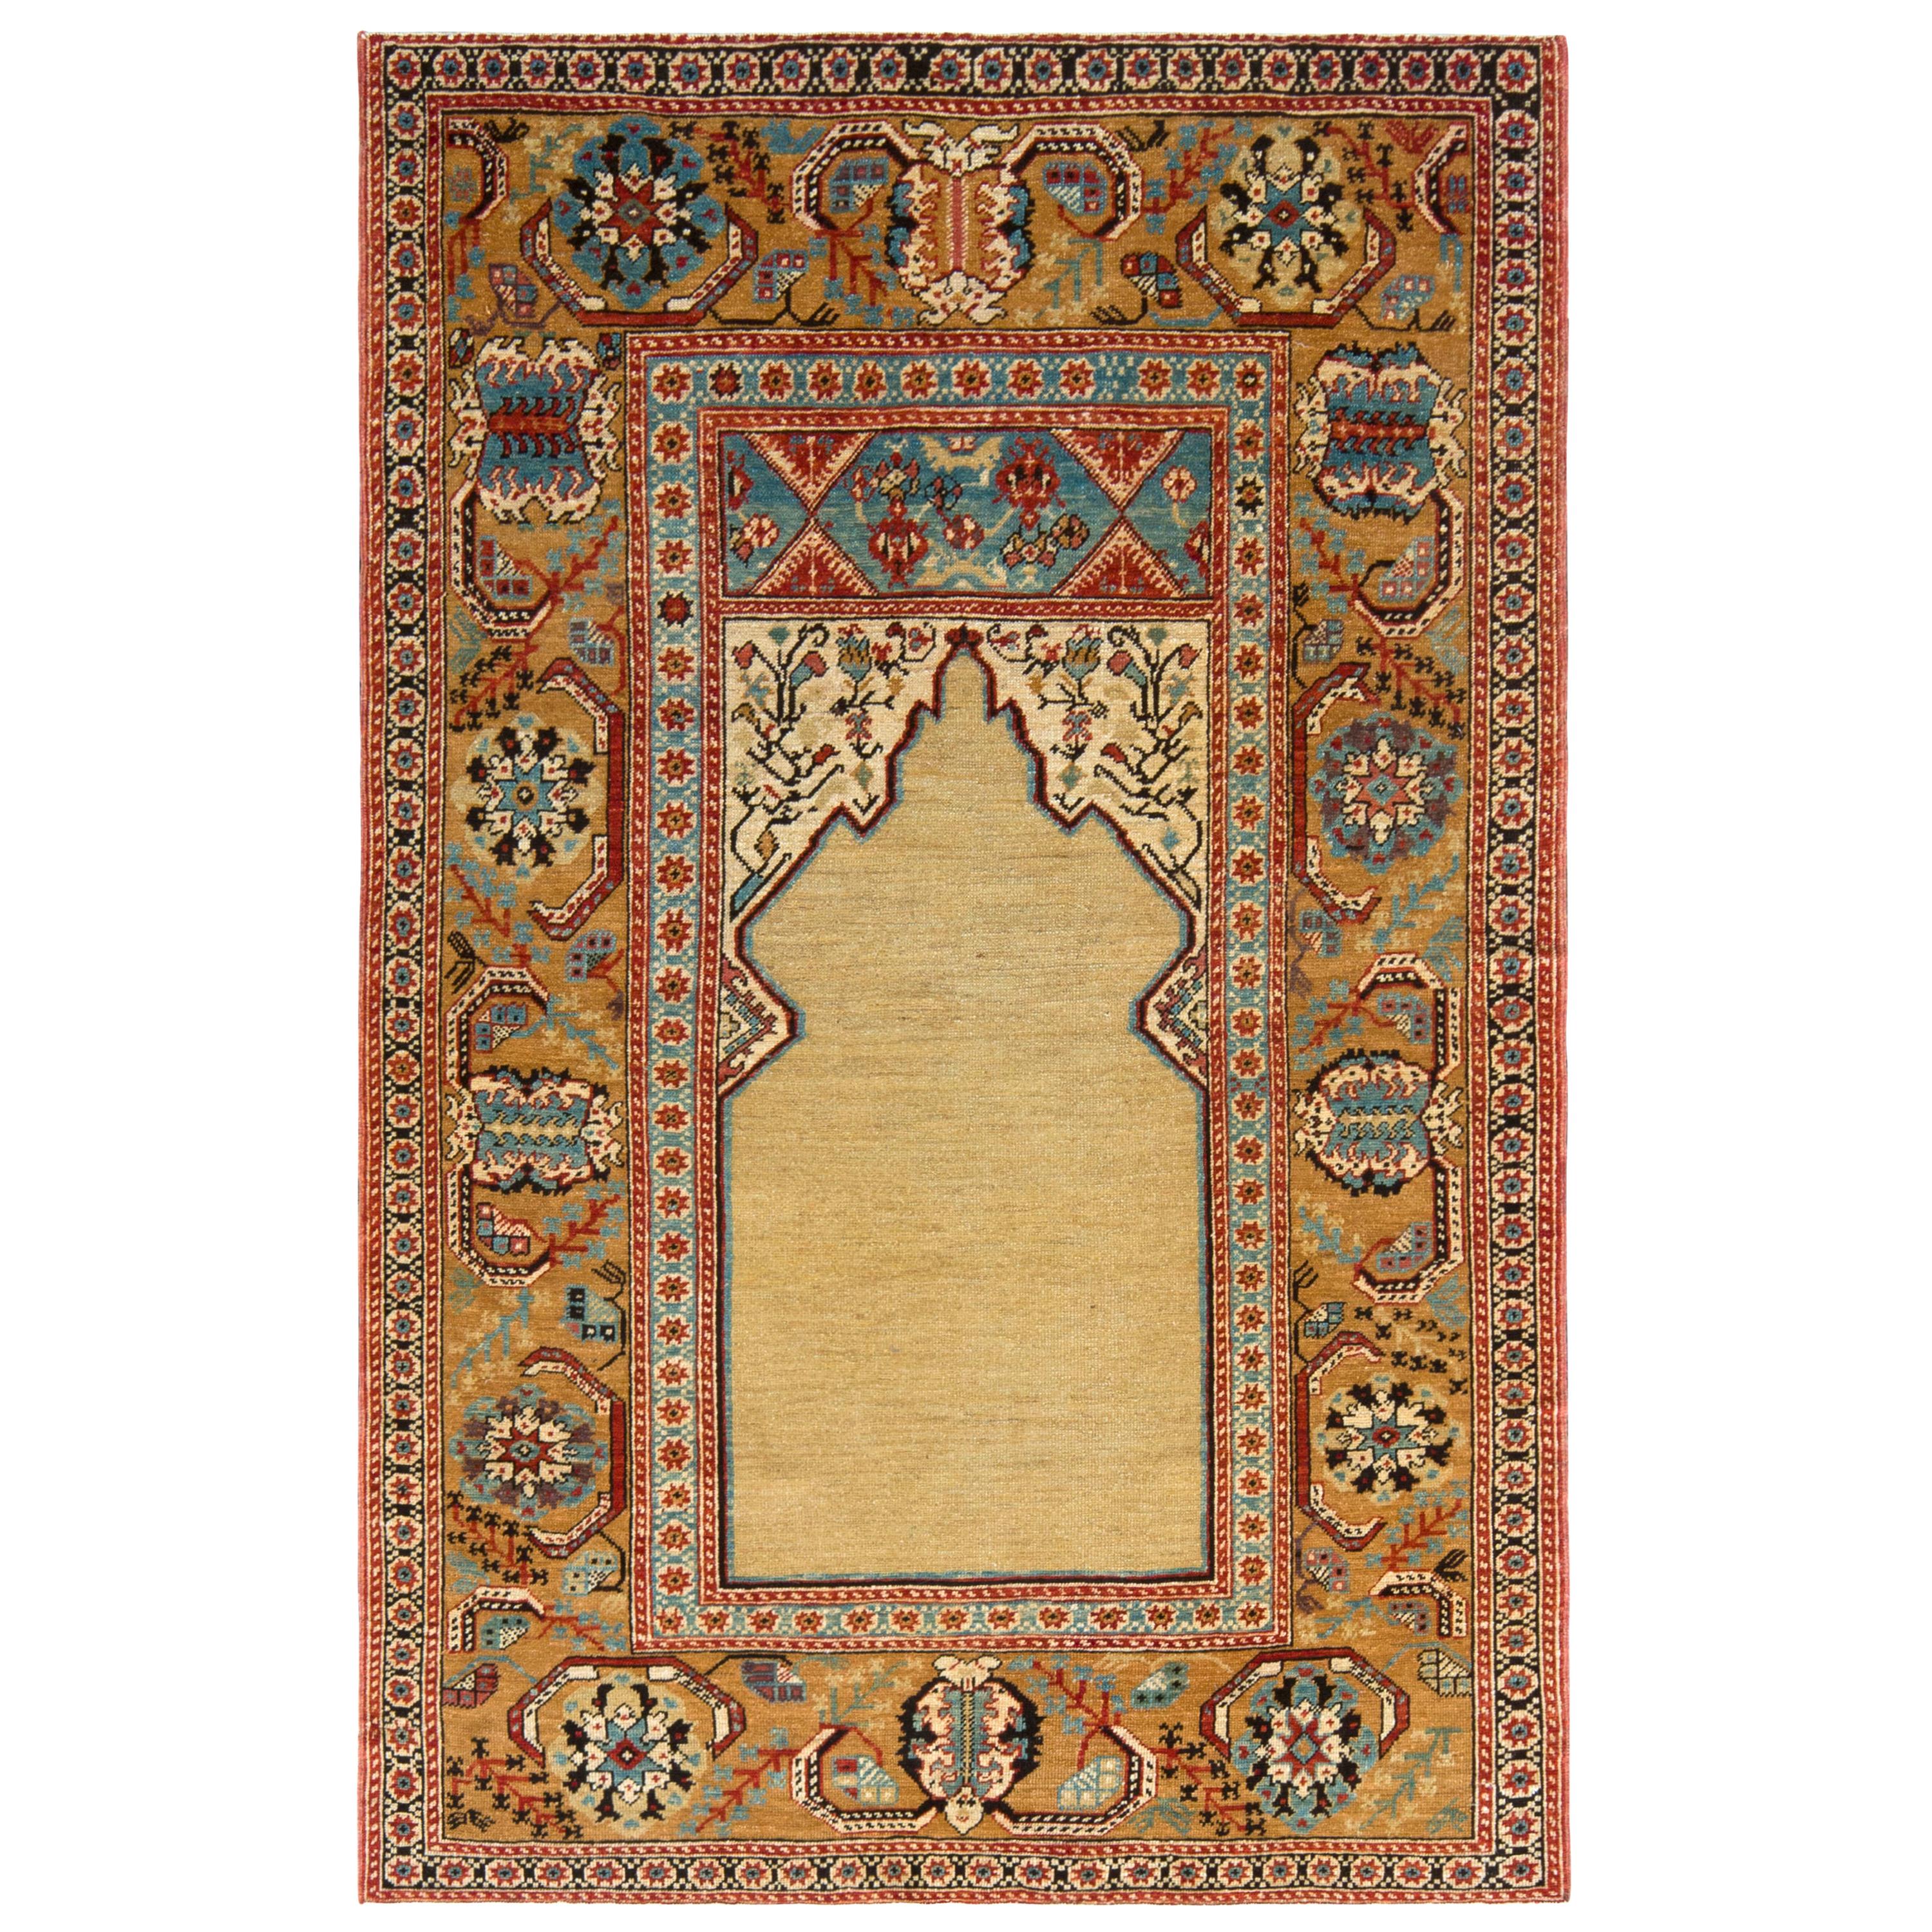 Rug & Kilim's 19. Jahrhundert Stil Teppich in Beige Gold und Blau Blumenmuster